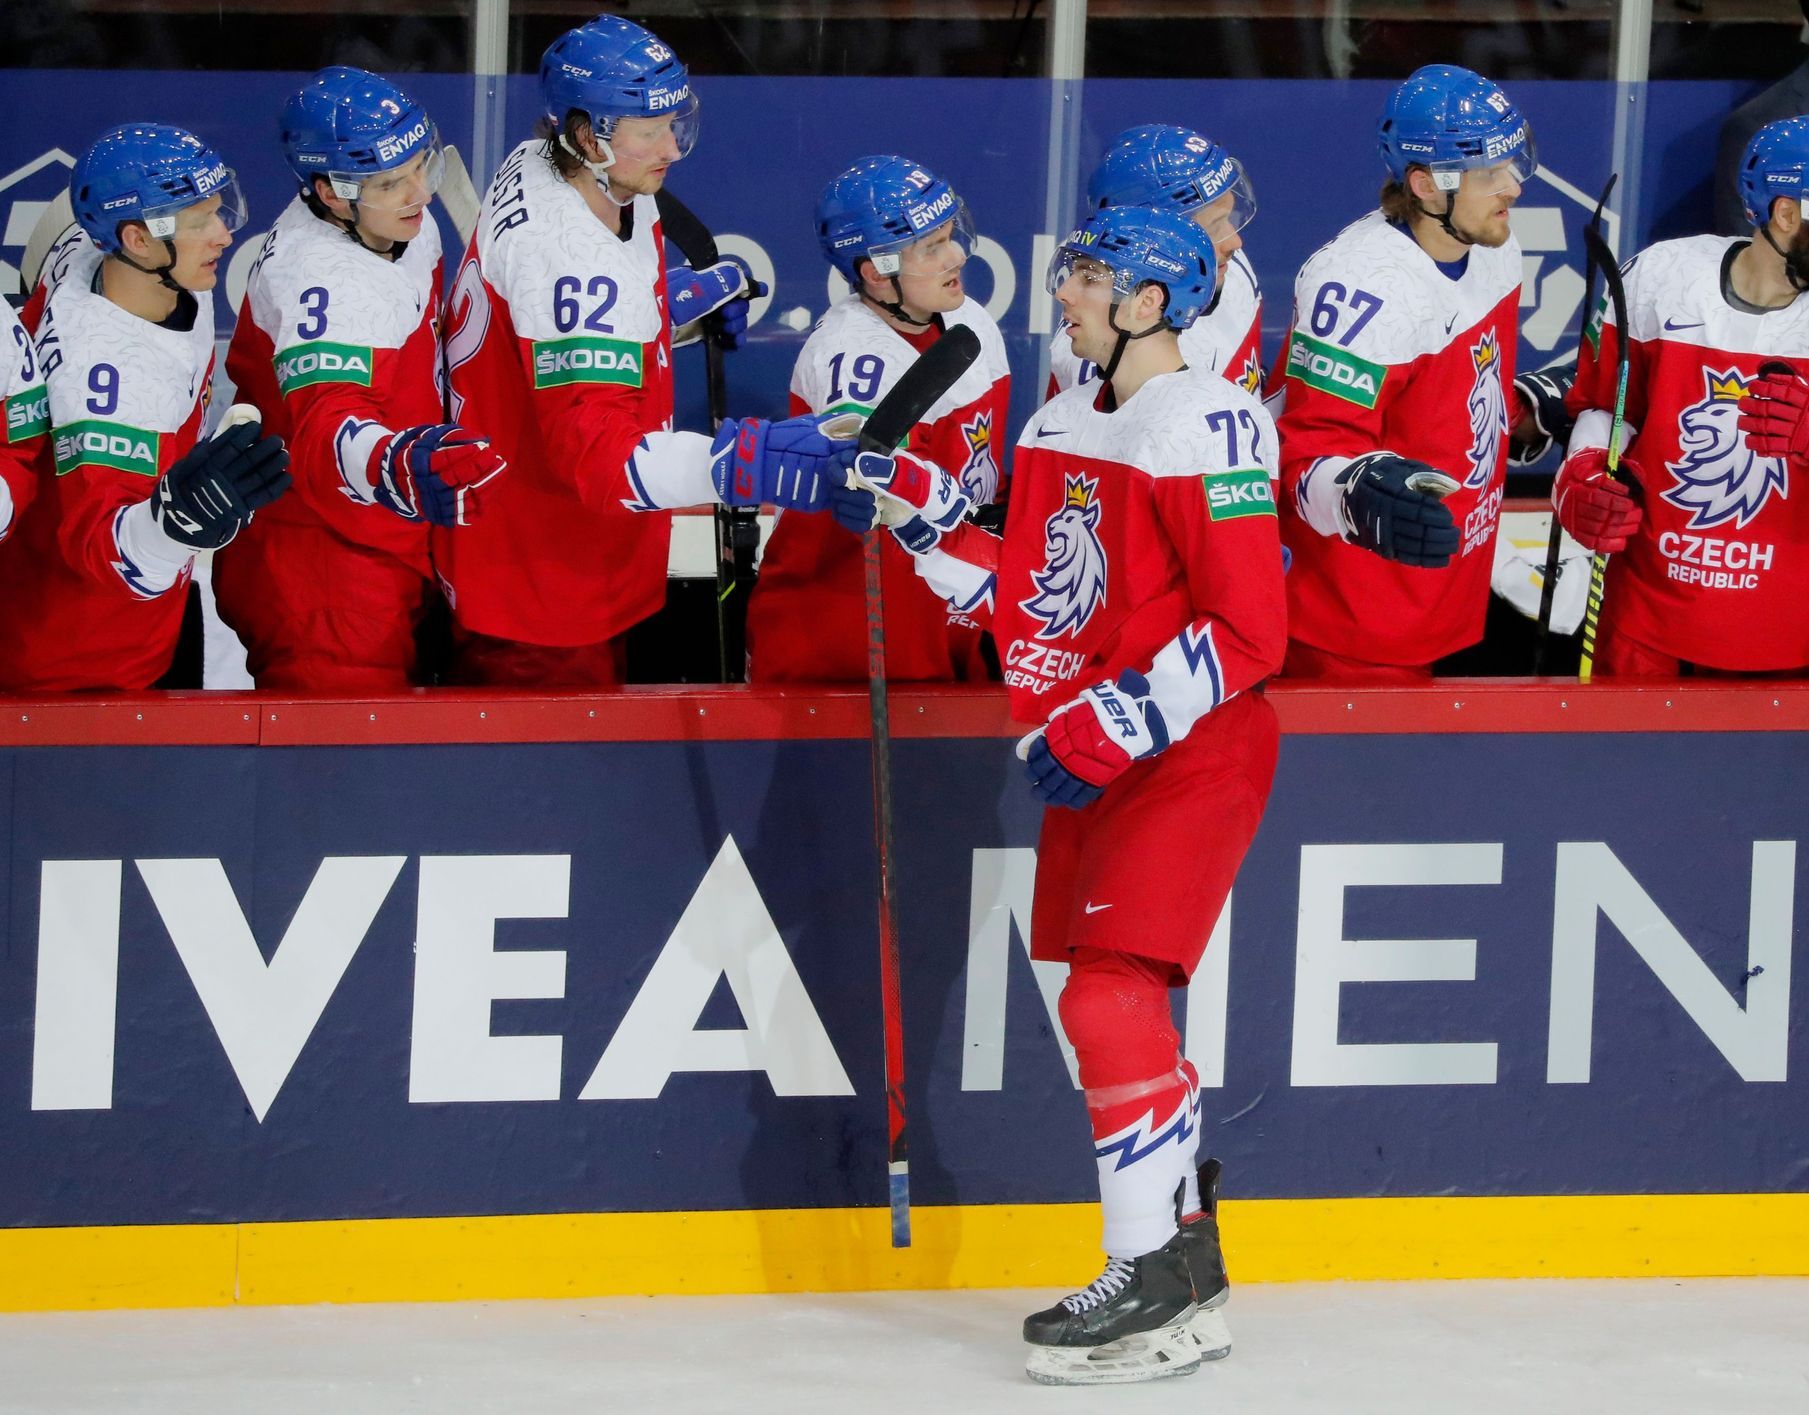 Les adversaires des joueurs de hockey tchèques à la Coupe du monde étaient l’Autriche, pas la Biélorussie qui a été éliminée